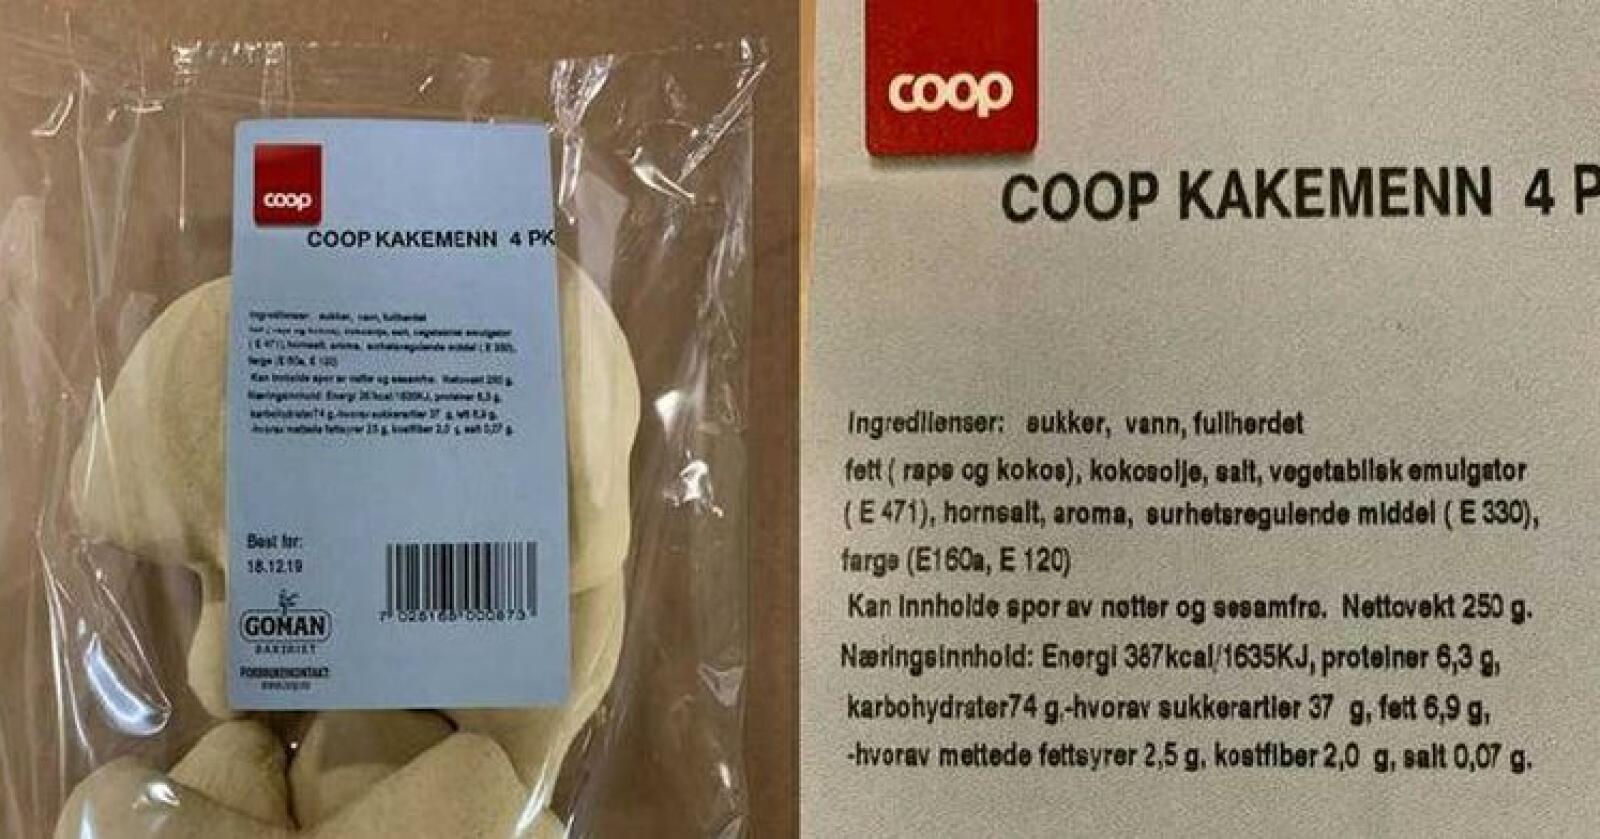 Goman Trondheim trekker tilbake alle batcher av produktet «COOP Kakemenn 250 g 4pk». Årsaken er manglende allergenmerking. Foto: Maportalen.no